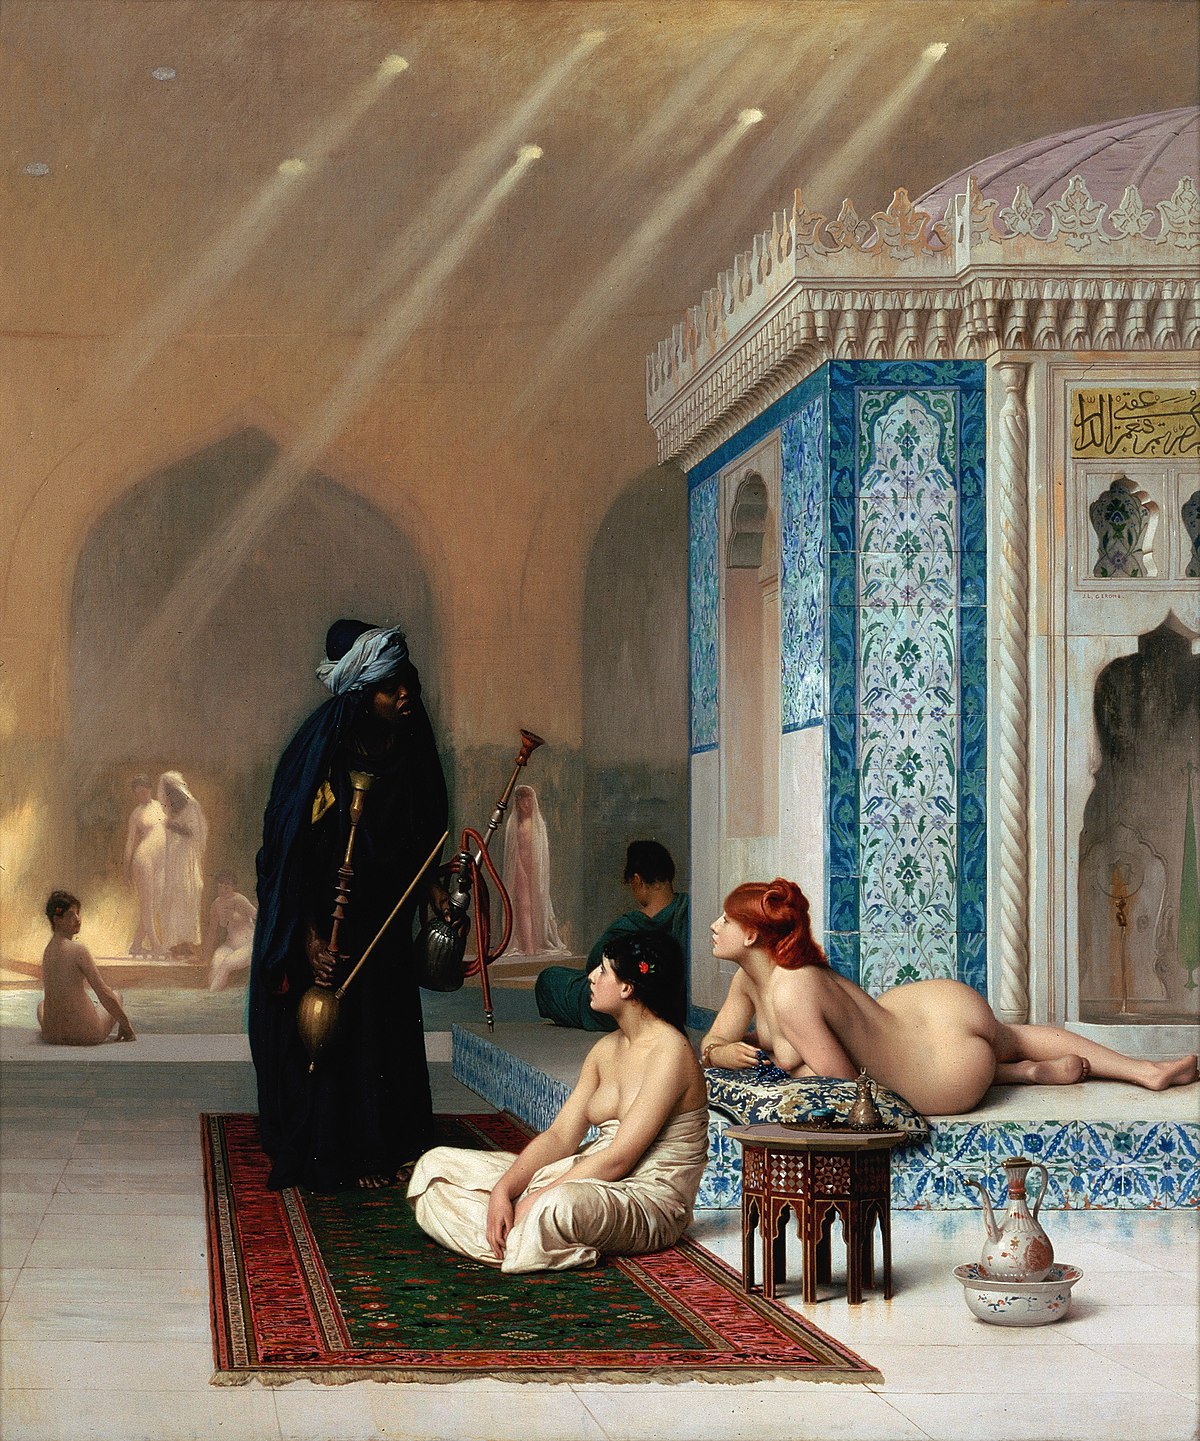 Как попадали на ложе к султанам и почему султаны смотрели женщине только в глаза